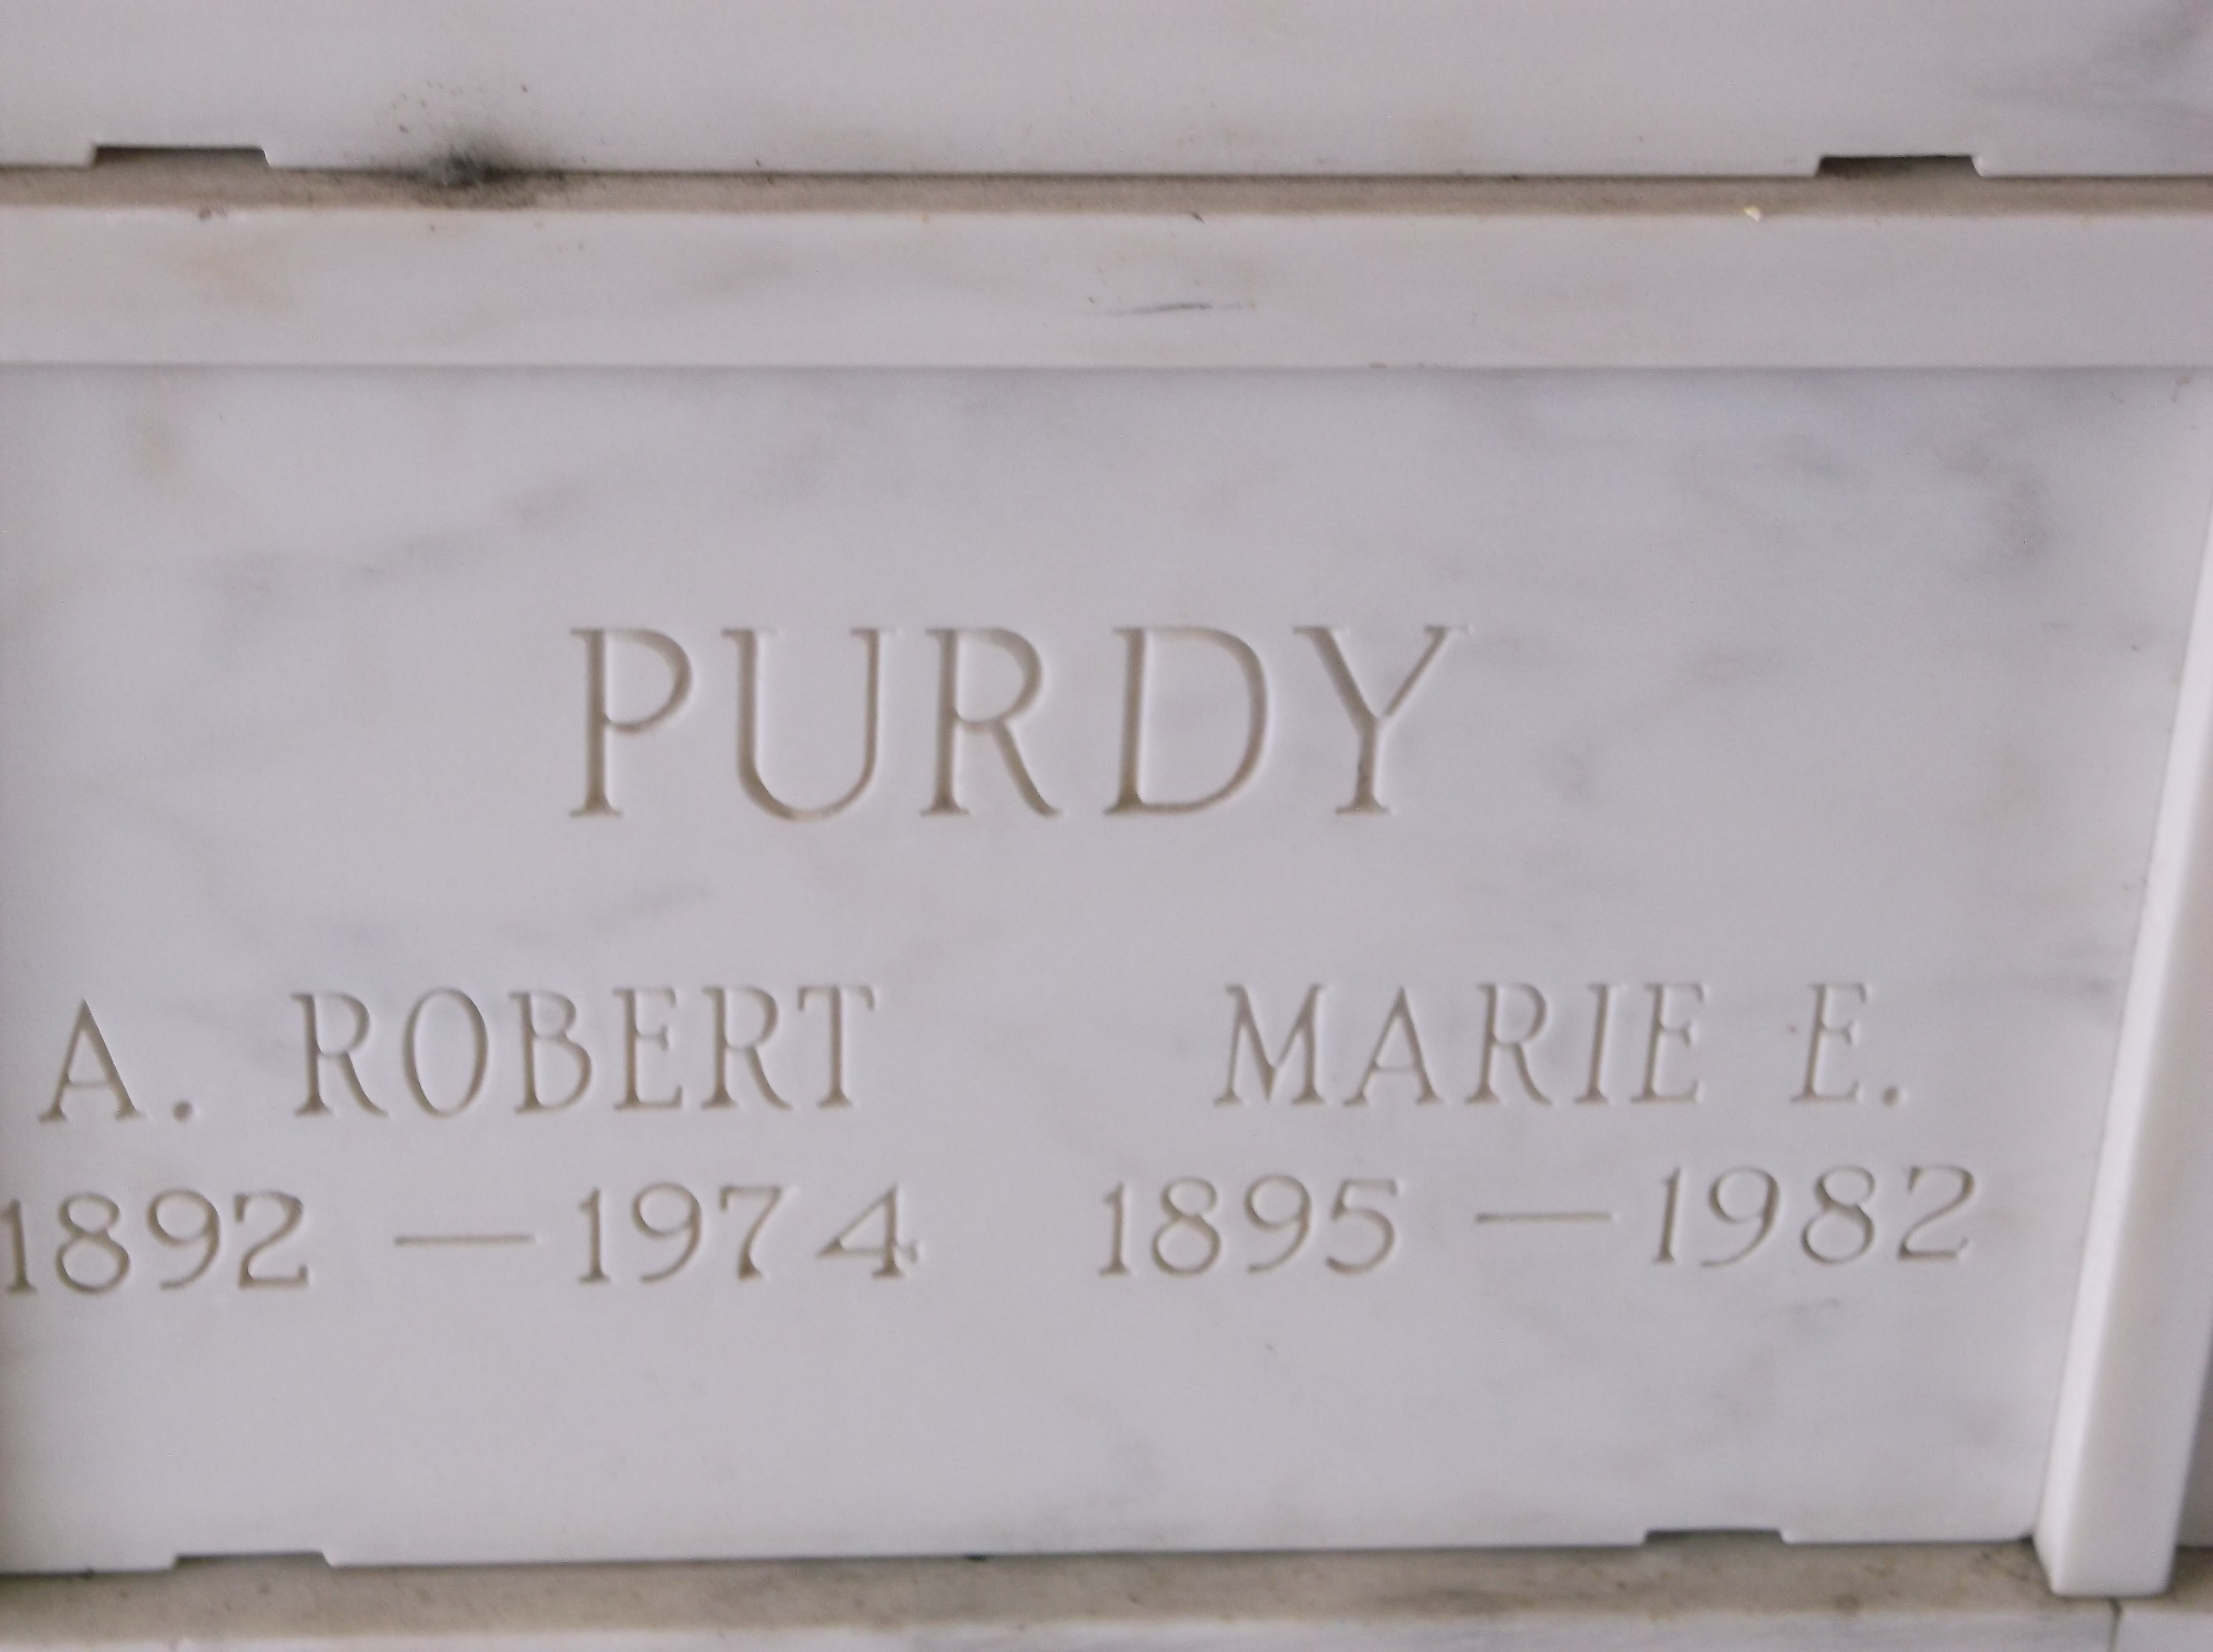 A Robert Purdy